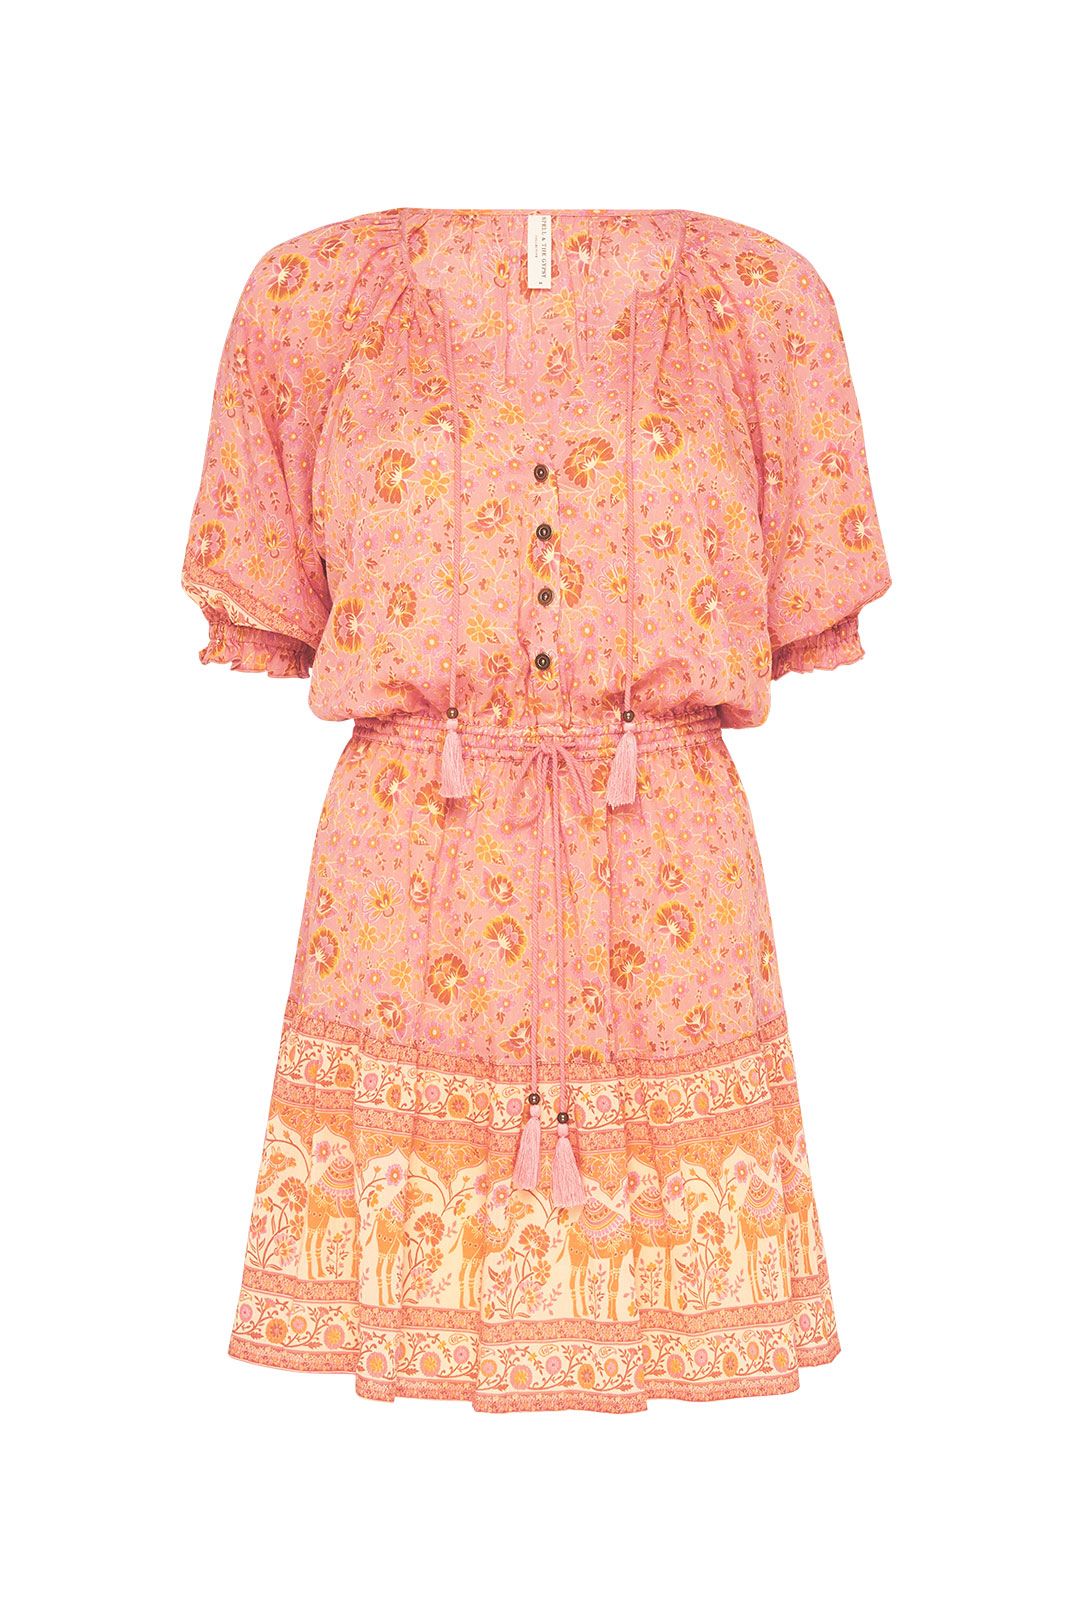 Spell Sundown Playdress Apricot Summer Dress